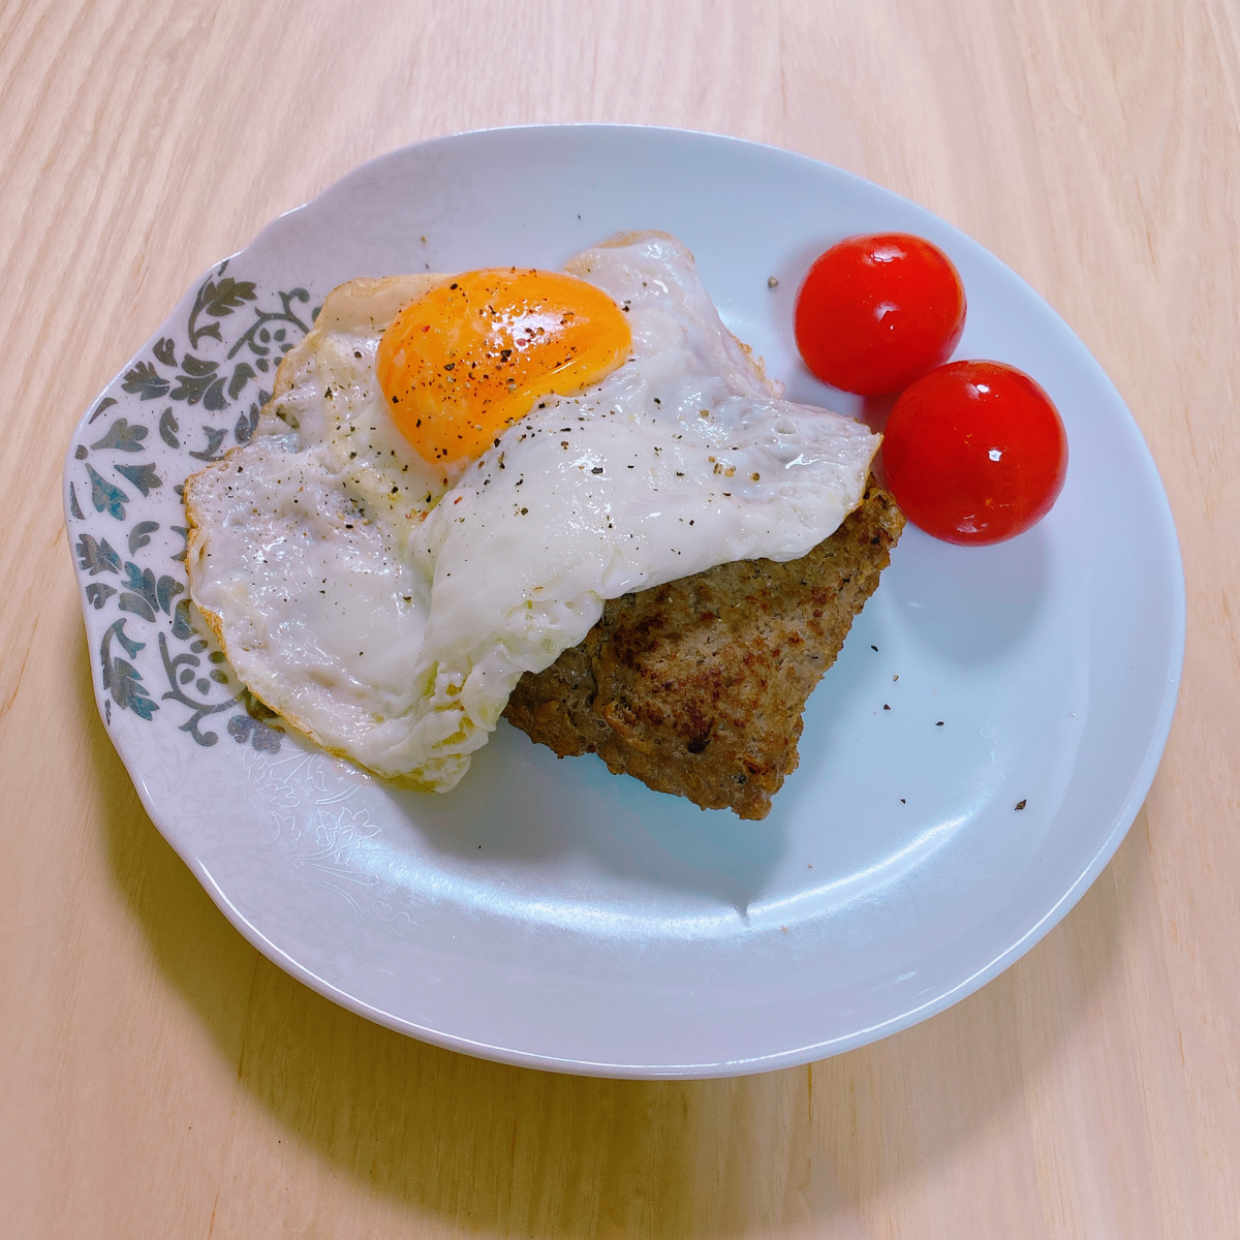  【テレビ番組のレシピをお試し】かりんとう(!?)とひき肉で作る「ハンバーグ」が柔らか食感で驚いた！ 